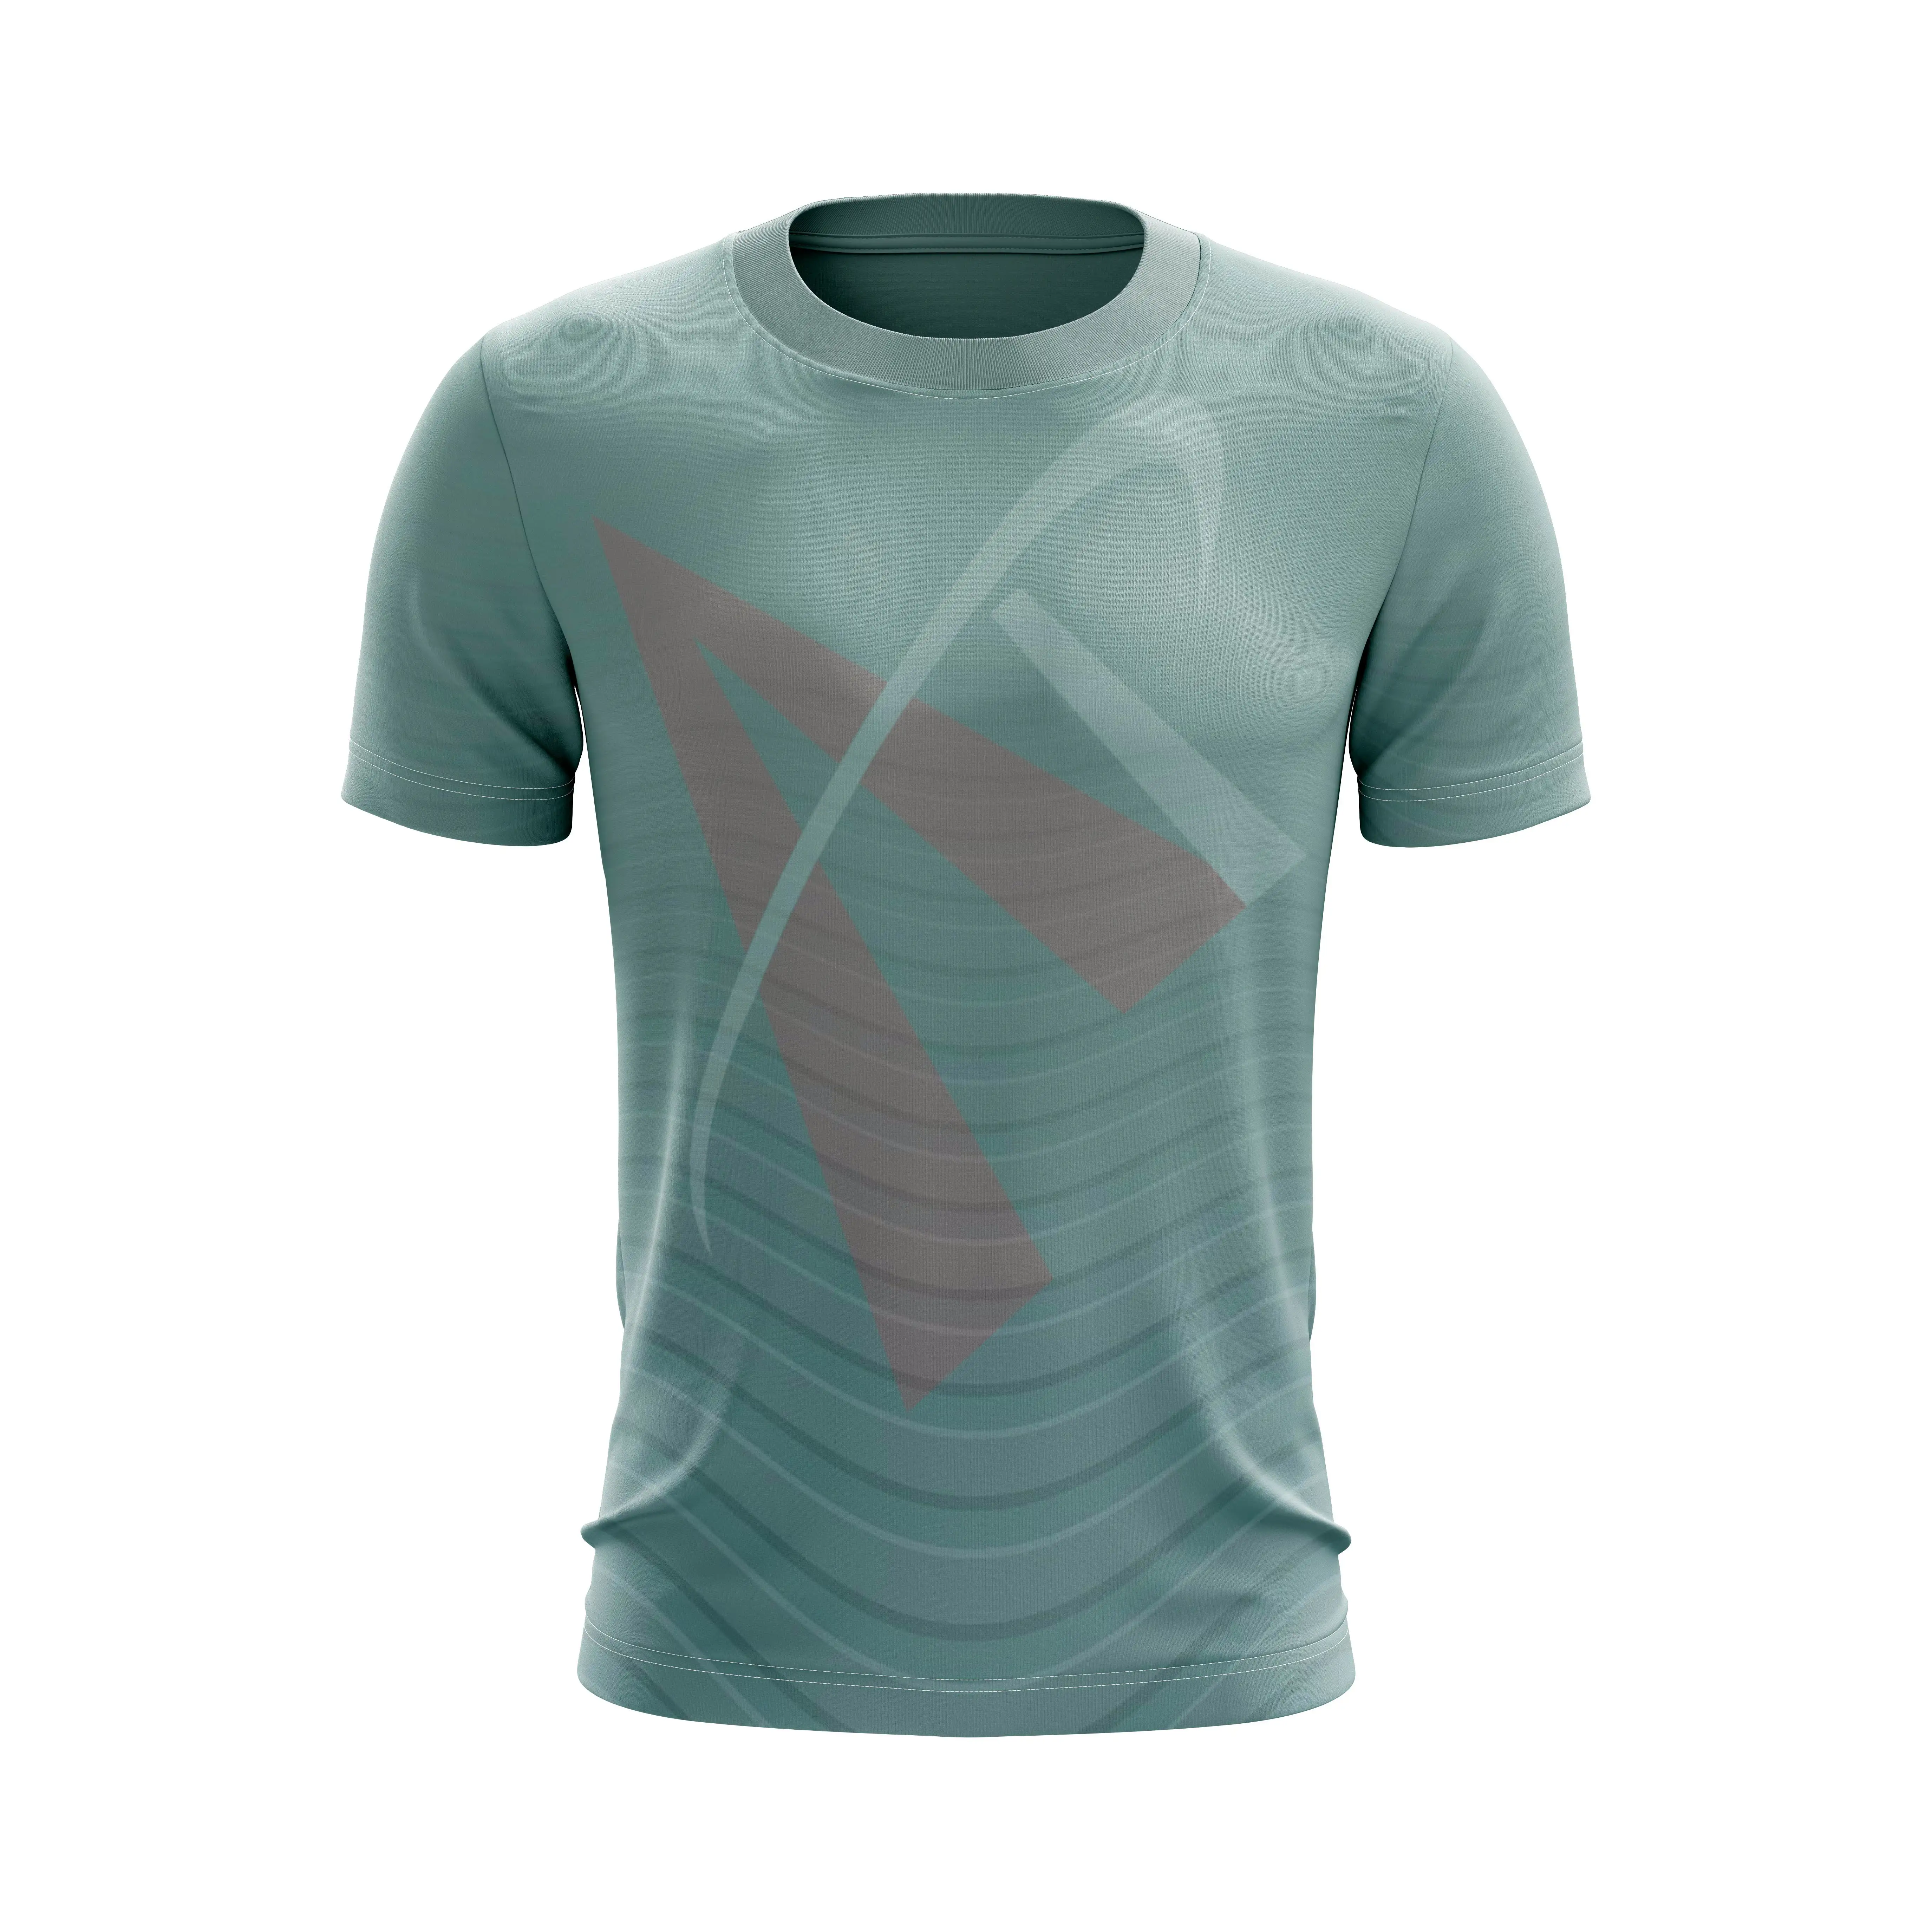 अच्छी गुणवत्ता वाले पुरुषों के खेल टी शर्ट बनाने की क्रिया मुद्रण लोगो डिजाइन थोक कस्टम यूनिसेक्स टी शर्ट